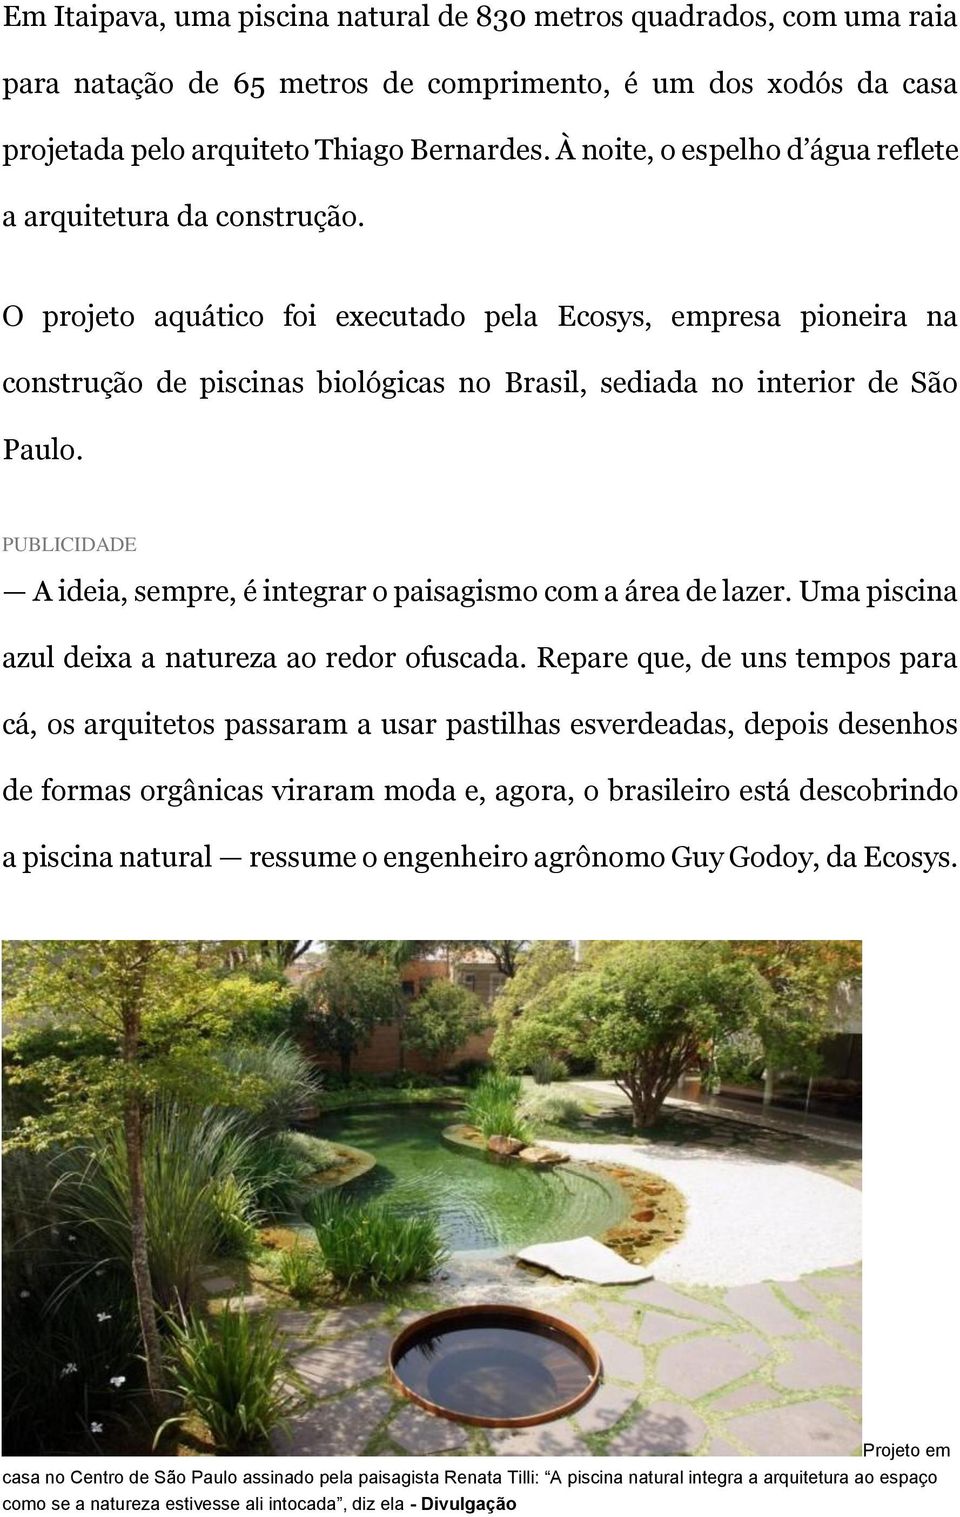 O projeto aquático foi executado pela Ecosys, empresa pioneira na construção de piscinas biológicas no Brasil, sediada no interior de São Paulo.